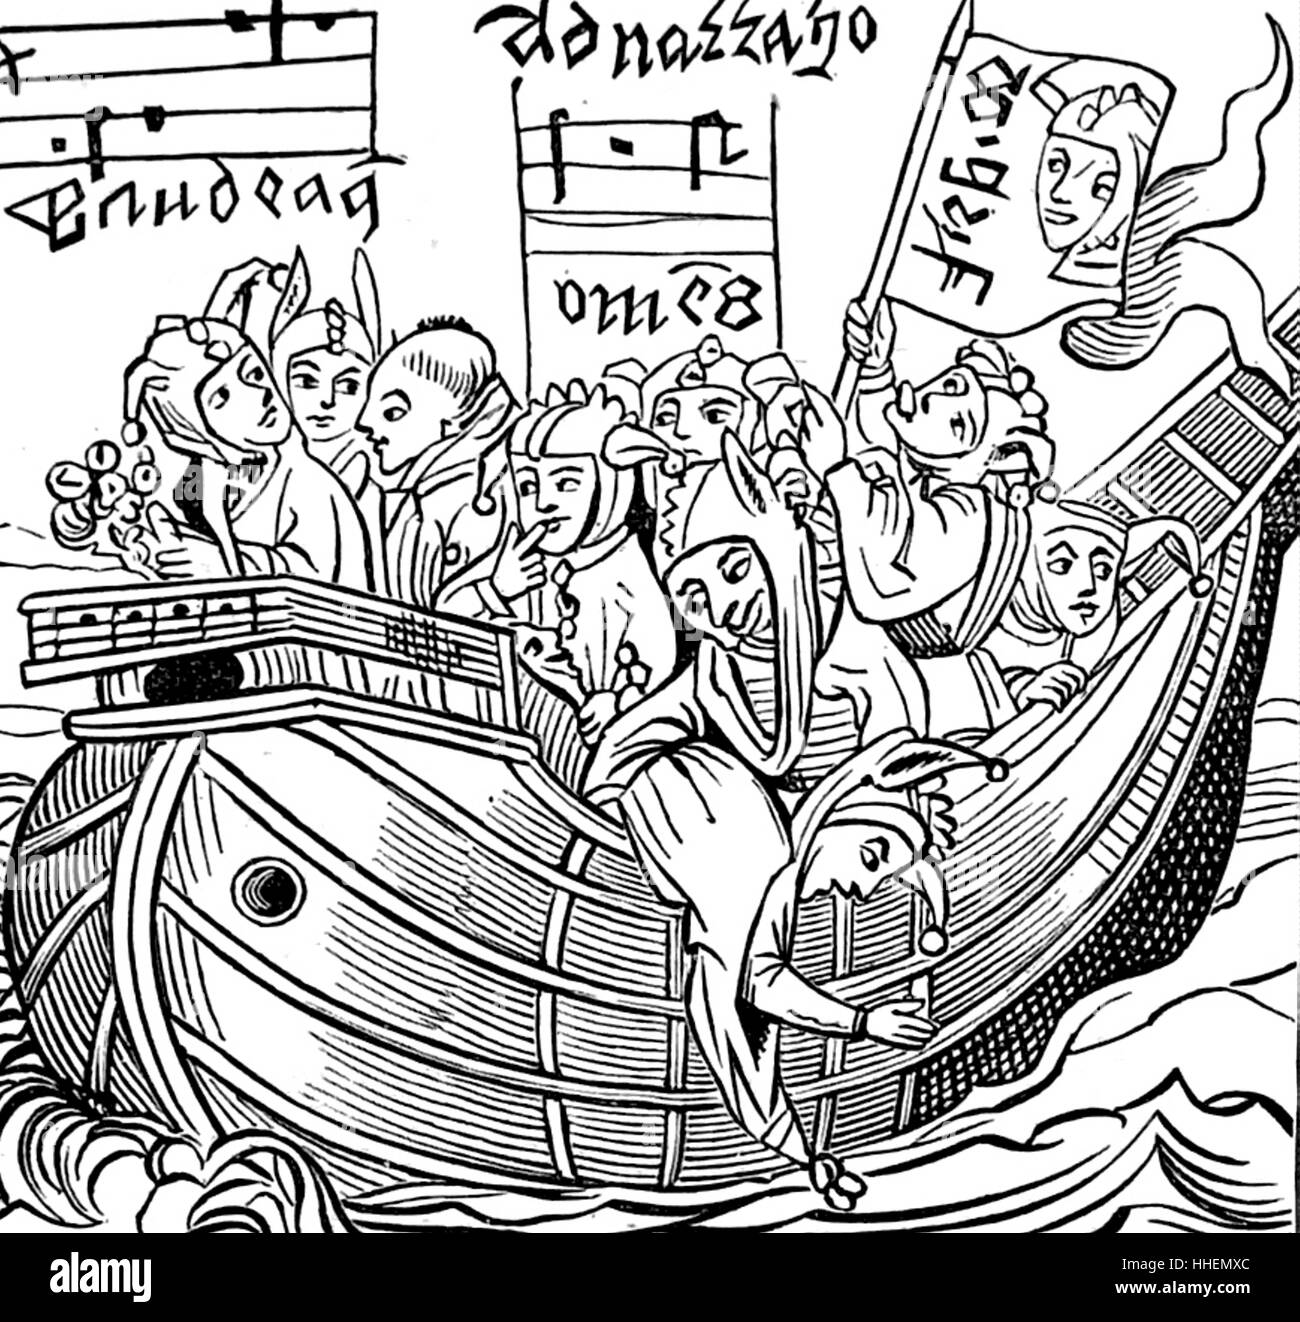 Holzschnittdruck mit dem Titel "The Ship of Fools". Vom 15. Jahrhundert Stockfoto